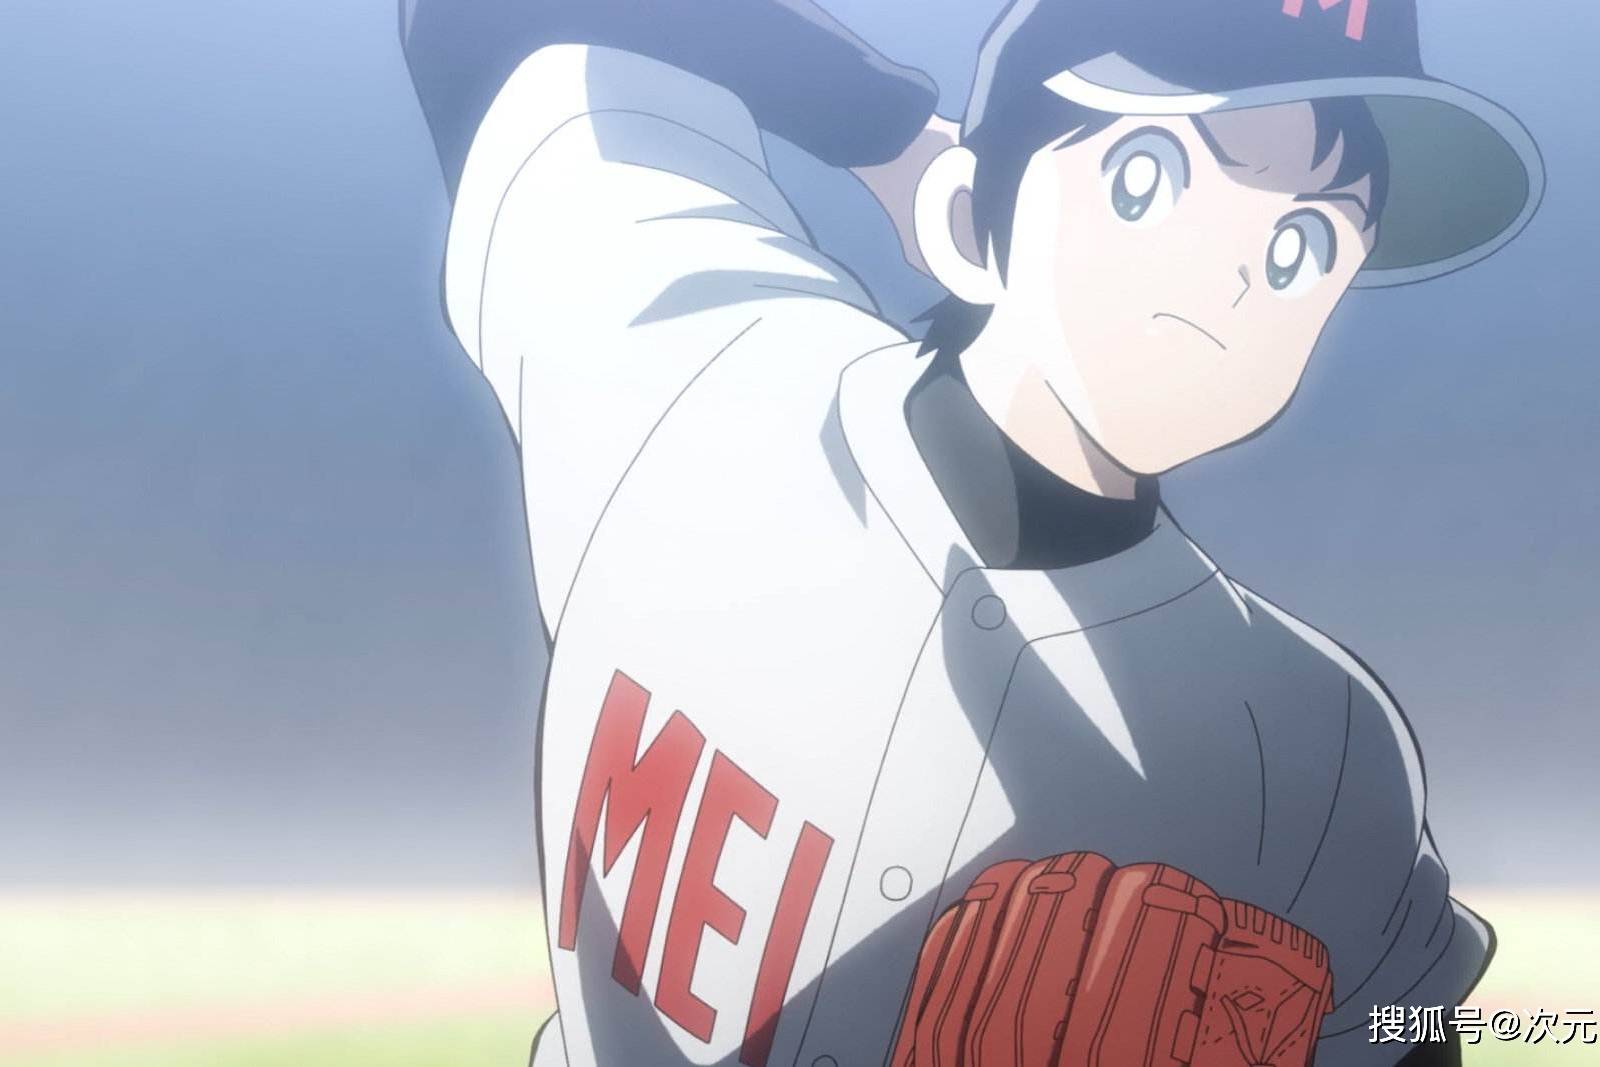 安达充《棒球英豪》续篇TV动画《MIX MEISEI STORY》第2季决定 